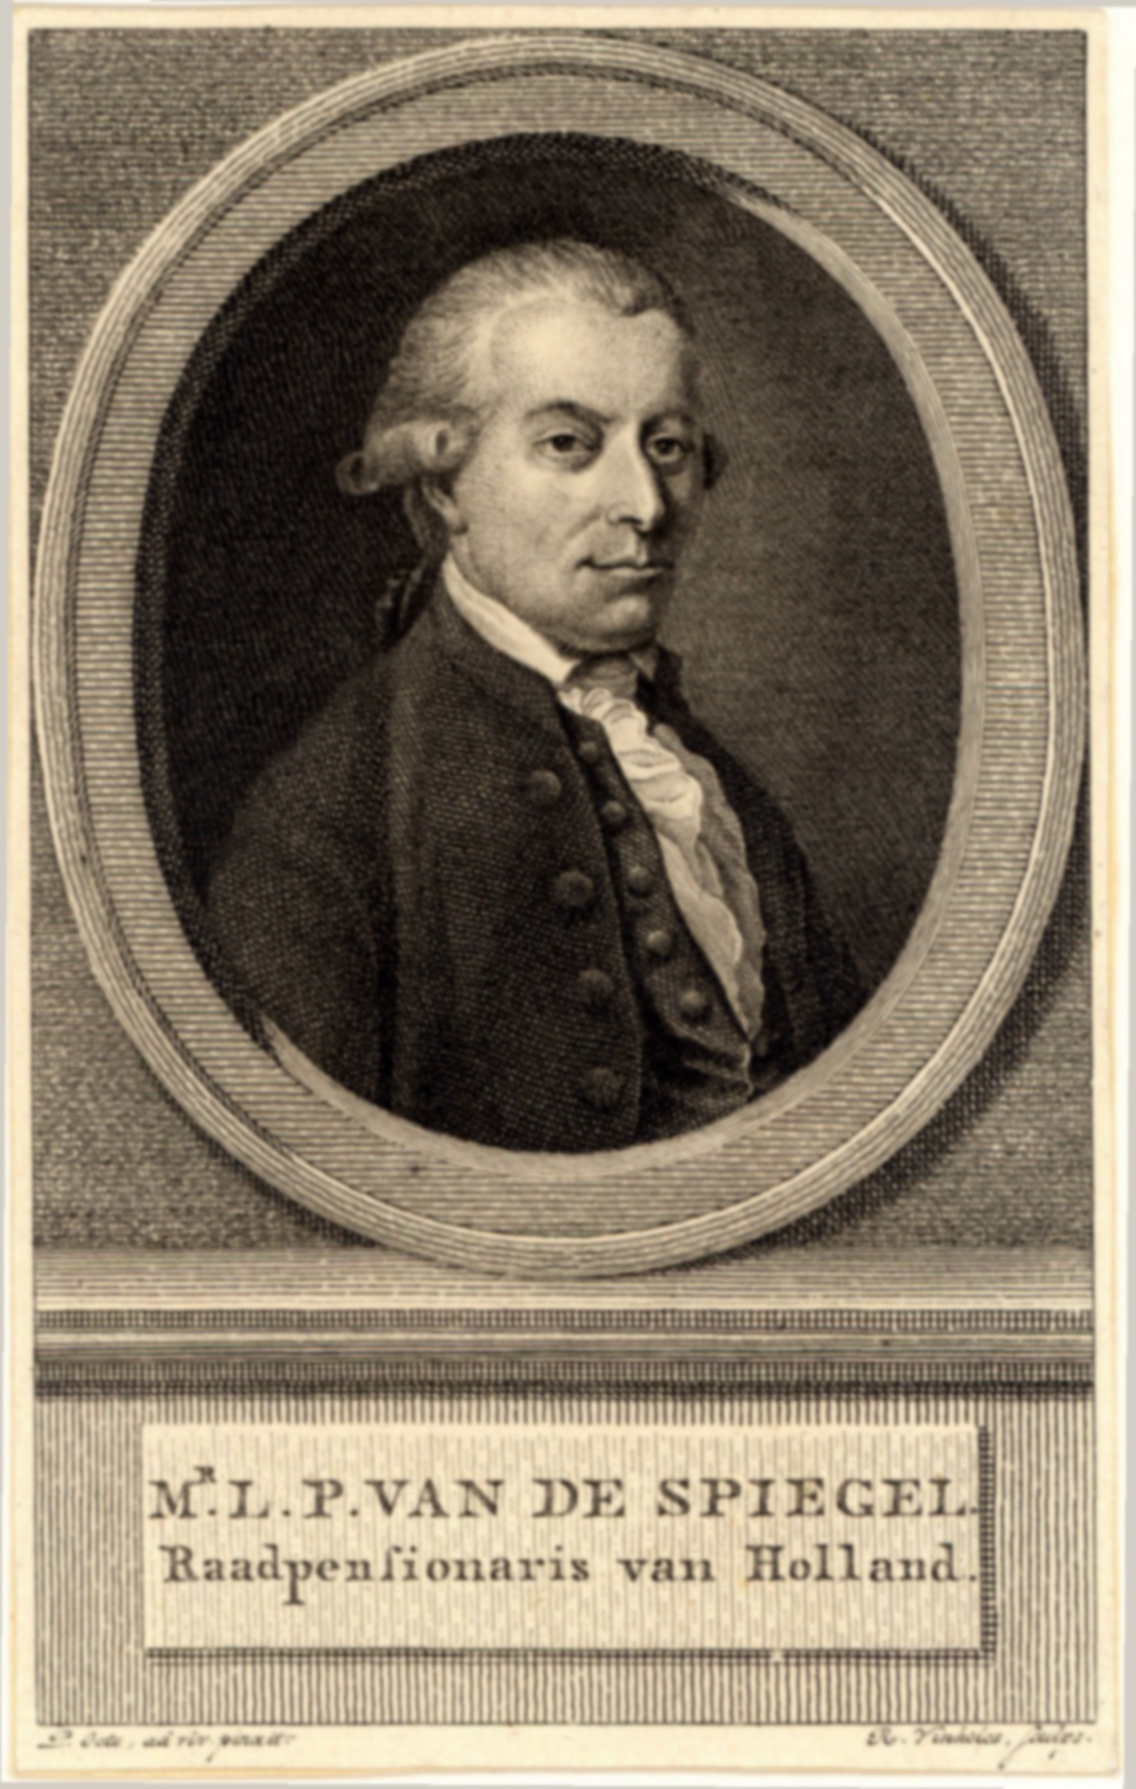 L.P. van de Spiegel, Raadspensionaris van Holland vanaf 1787.